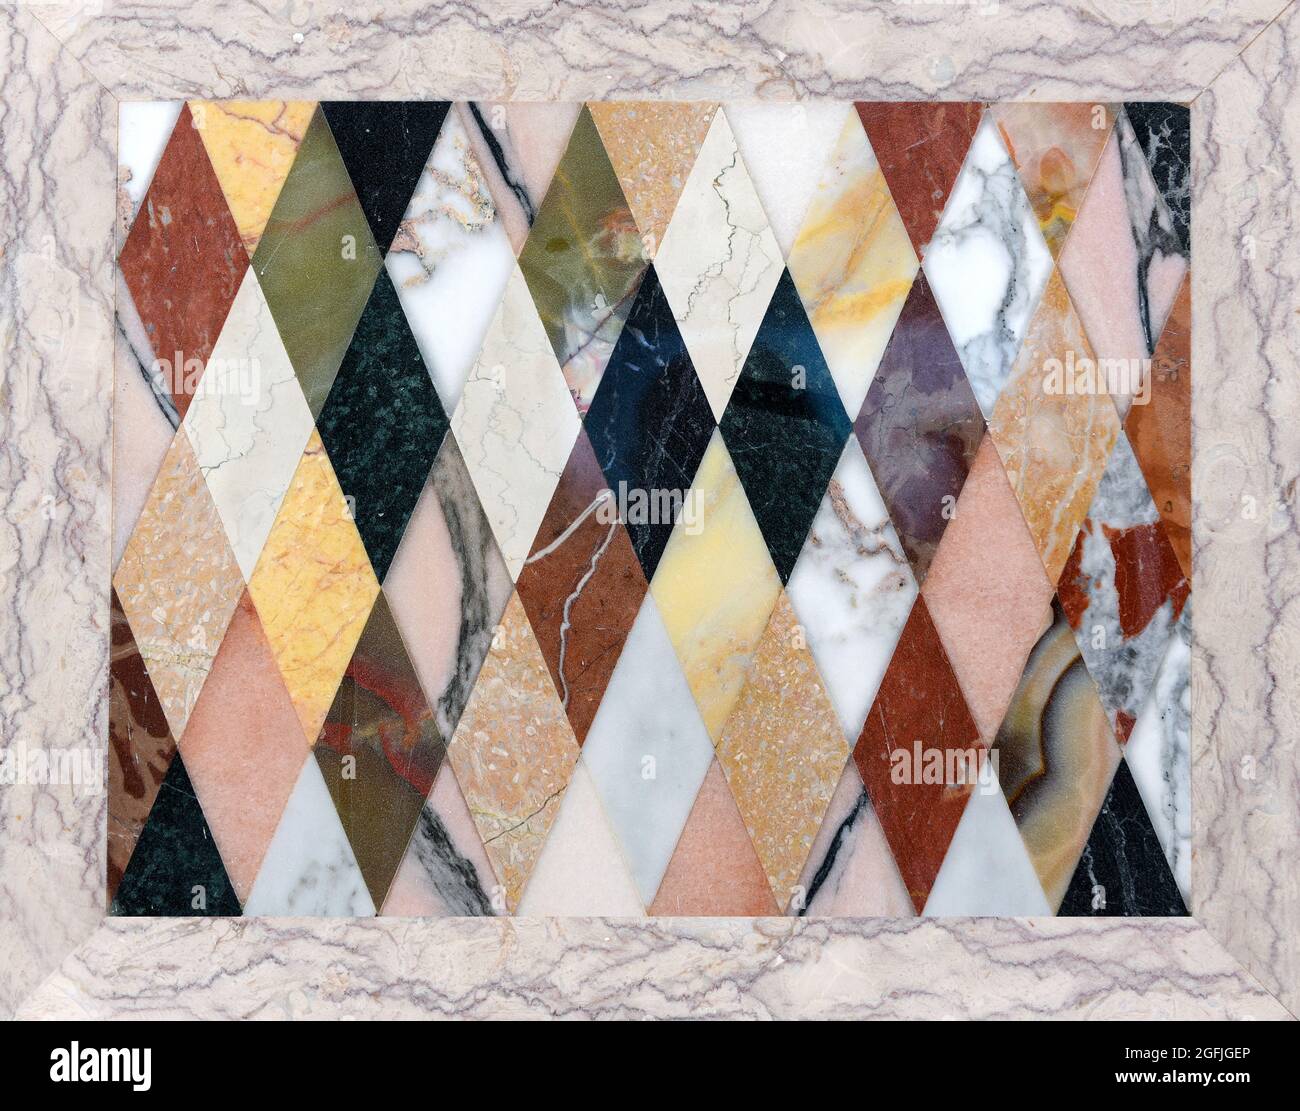 Mosaïque colorée de différents types de marbre italien dans un motif géométrique répété de diamants montrant les textures des pierres Banque D'Images